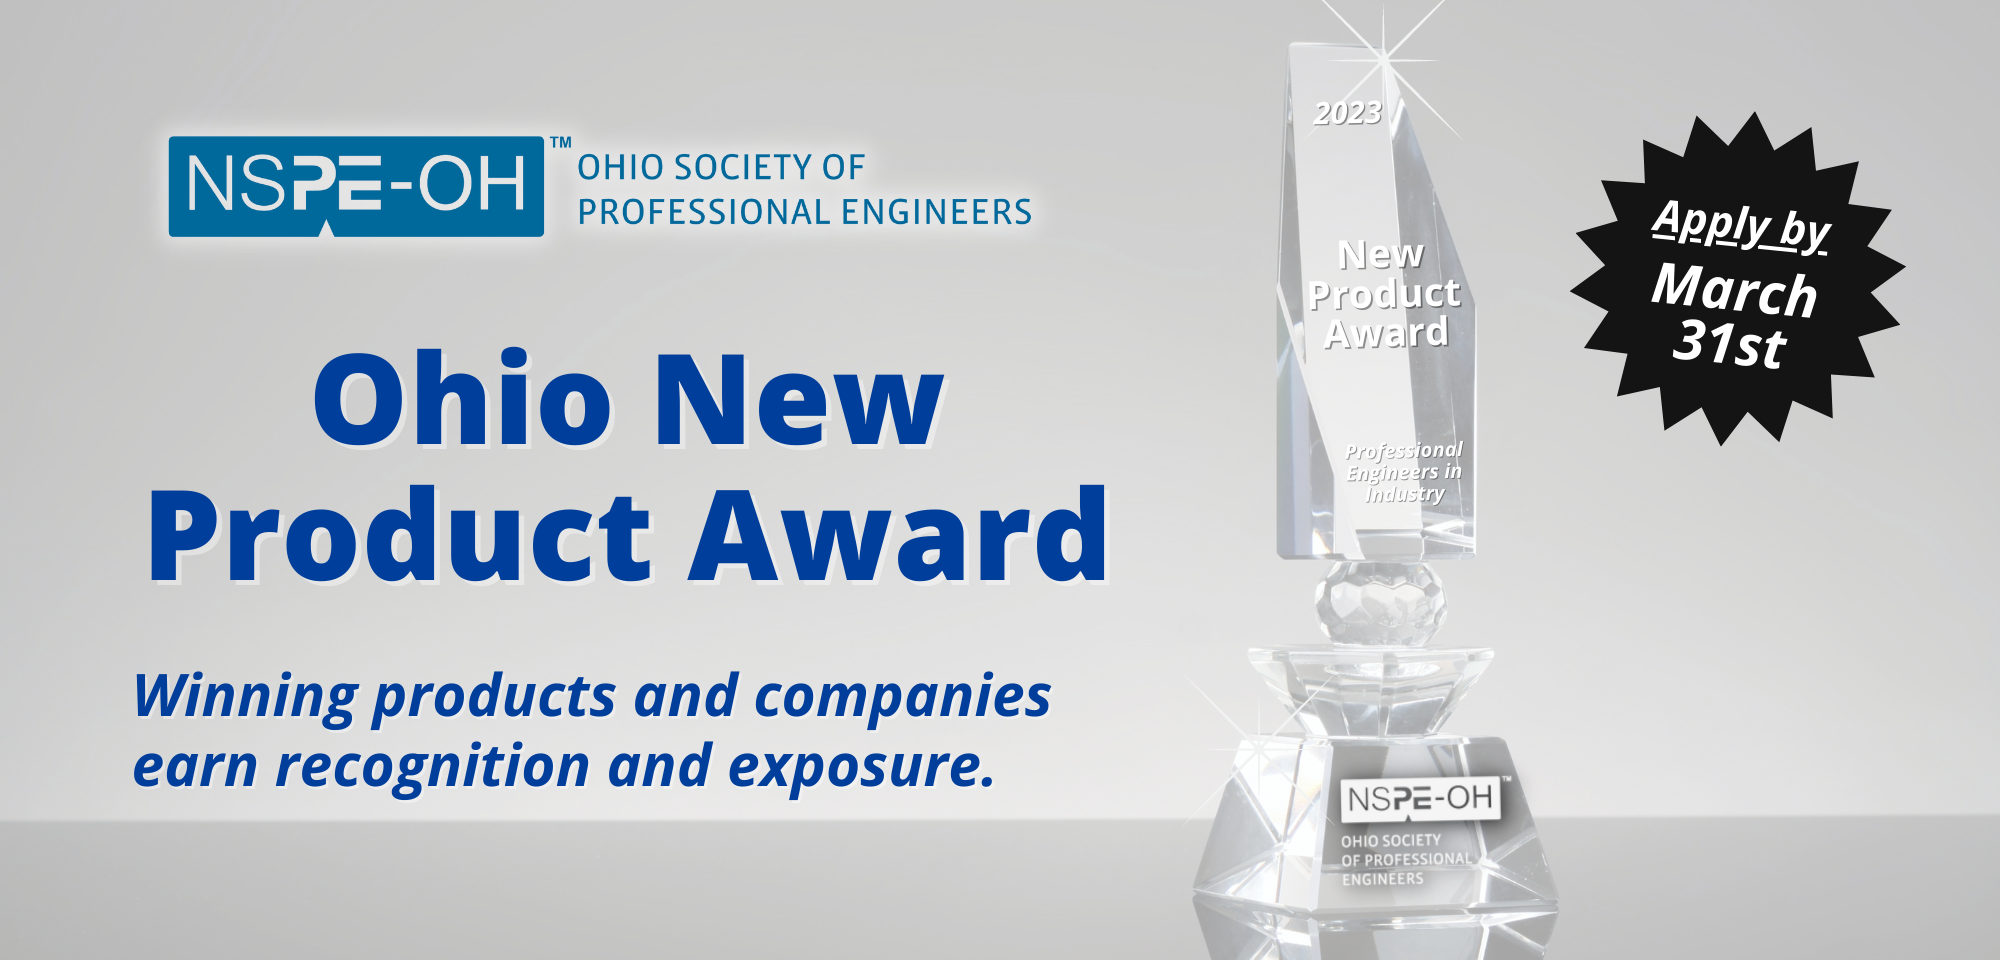 Ohio New Product Award